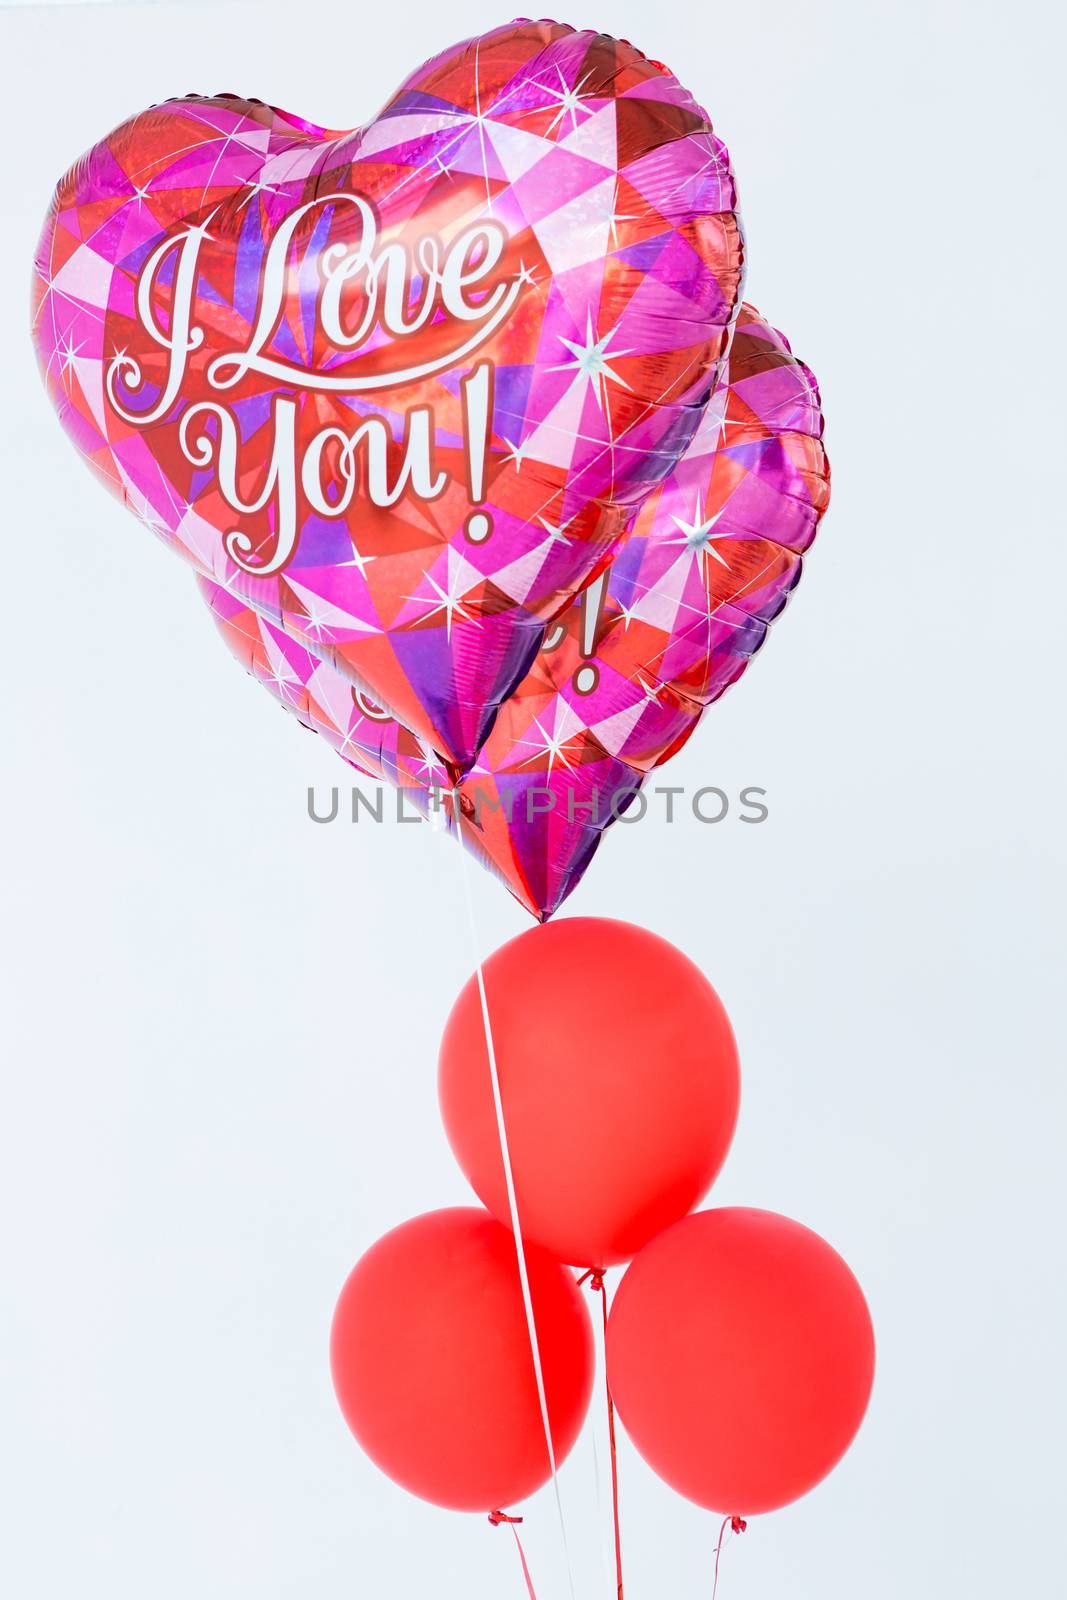 Valentines day balloons  by Wavebreakmedia